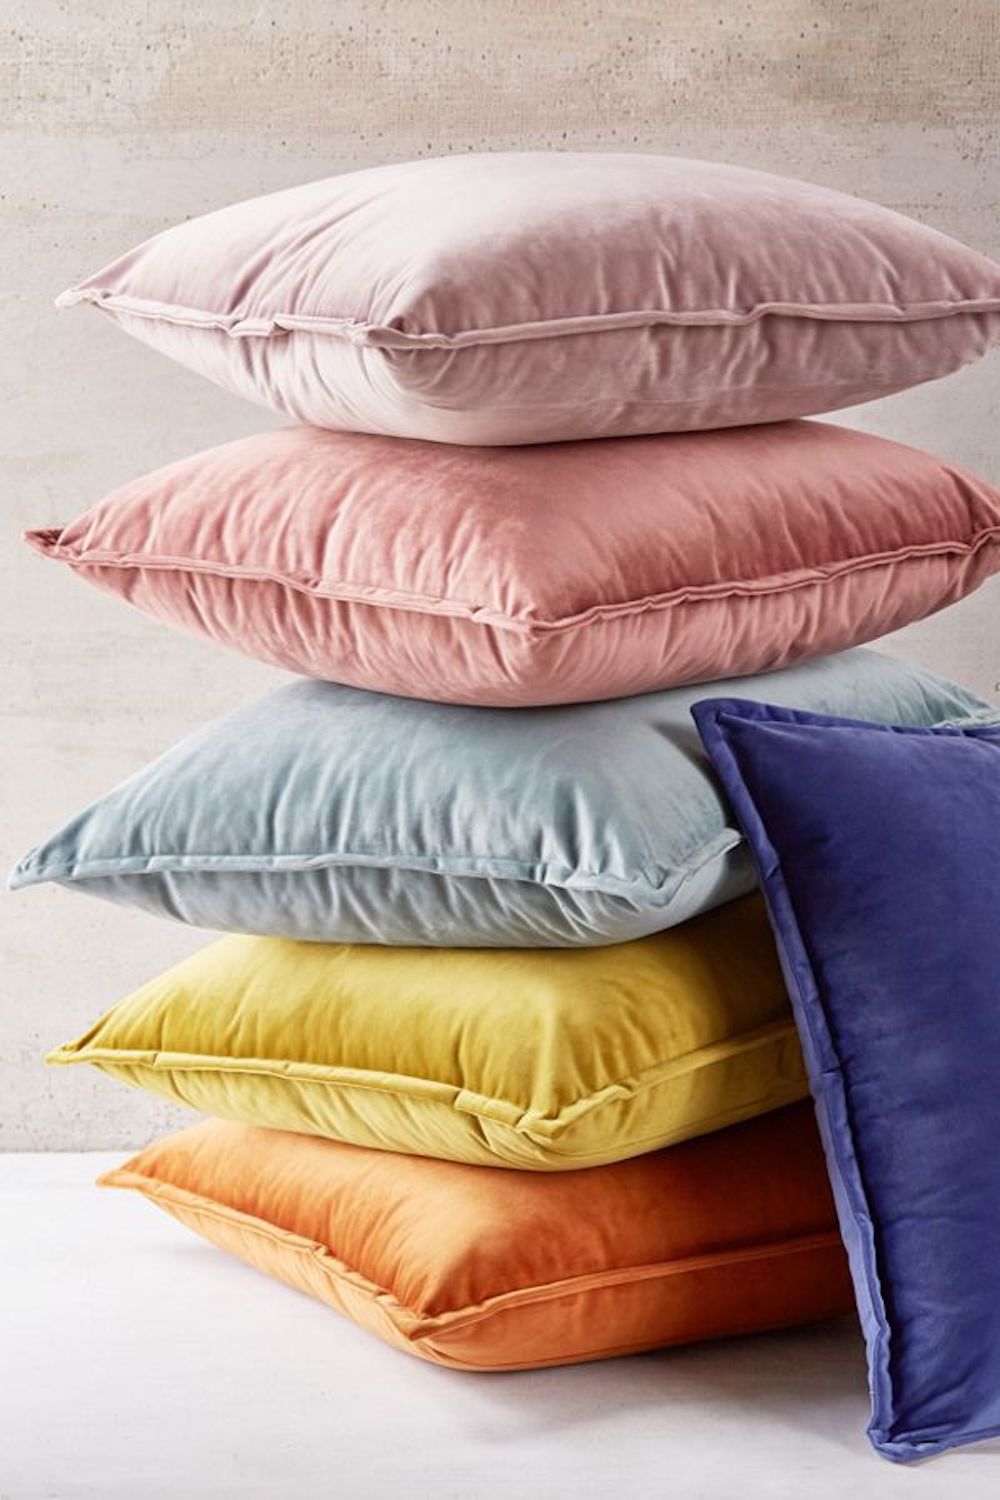 Oversized Velvet Throw Pillow by World Market